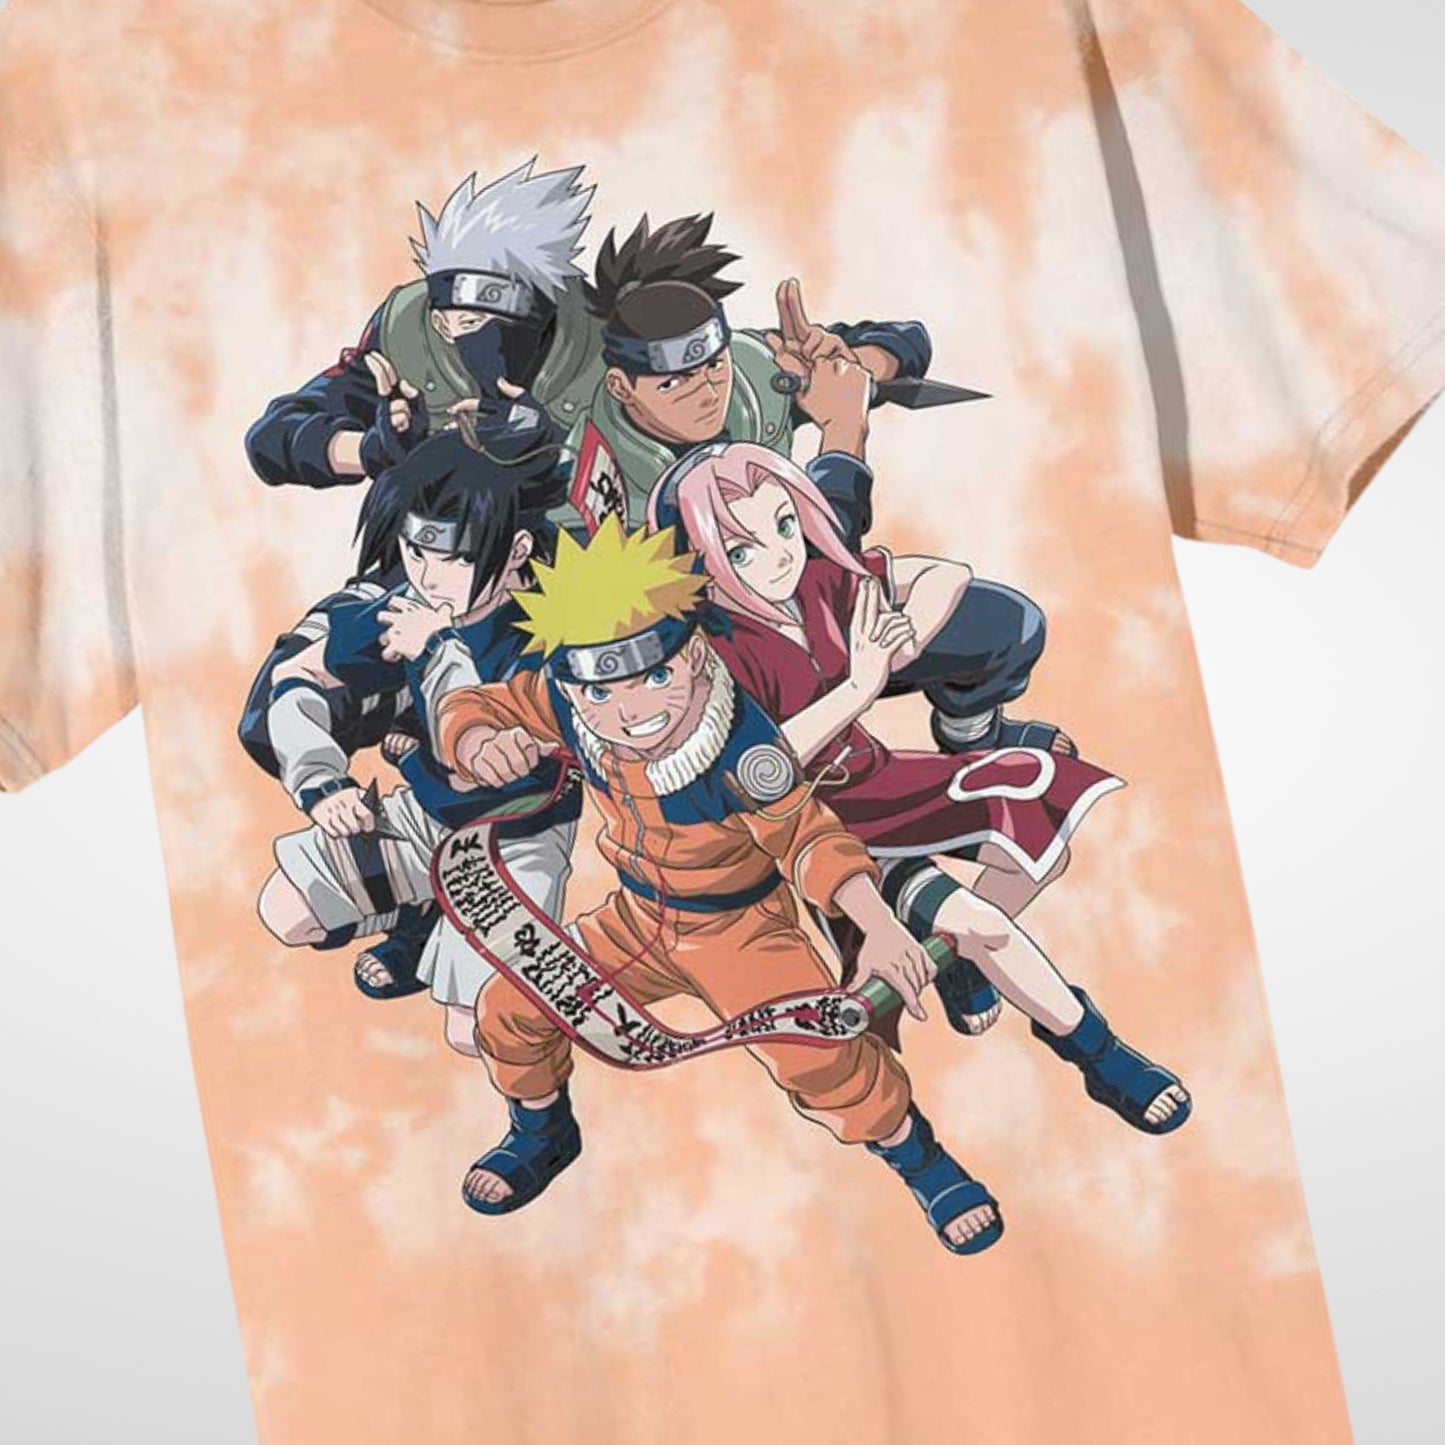 T-Shirt unissex Sasuke Uchiha – Naruto Shopping